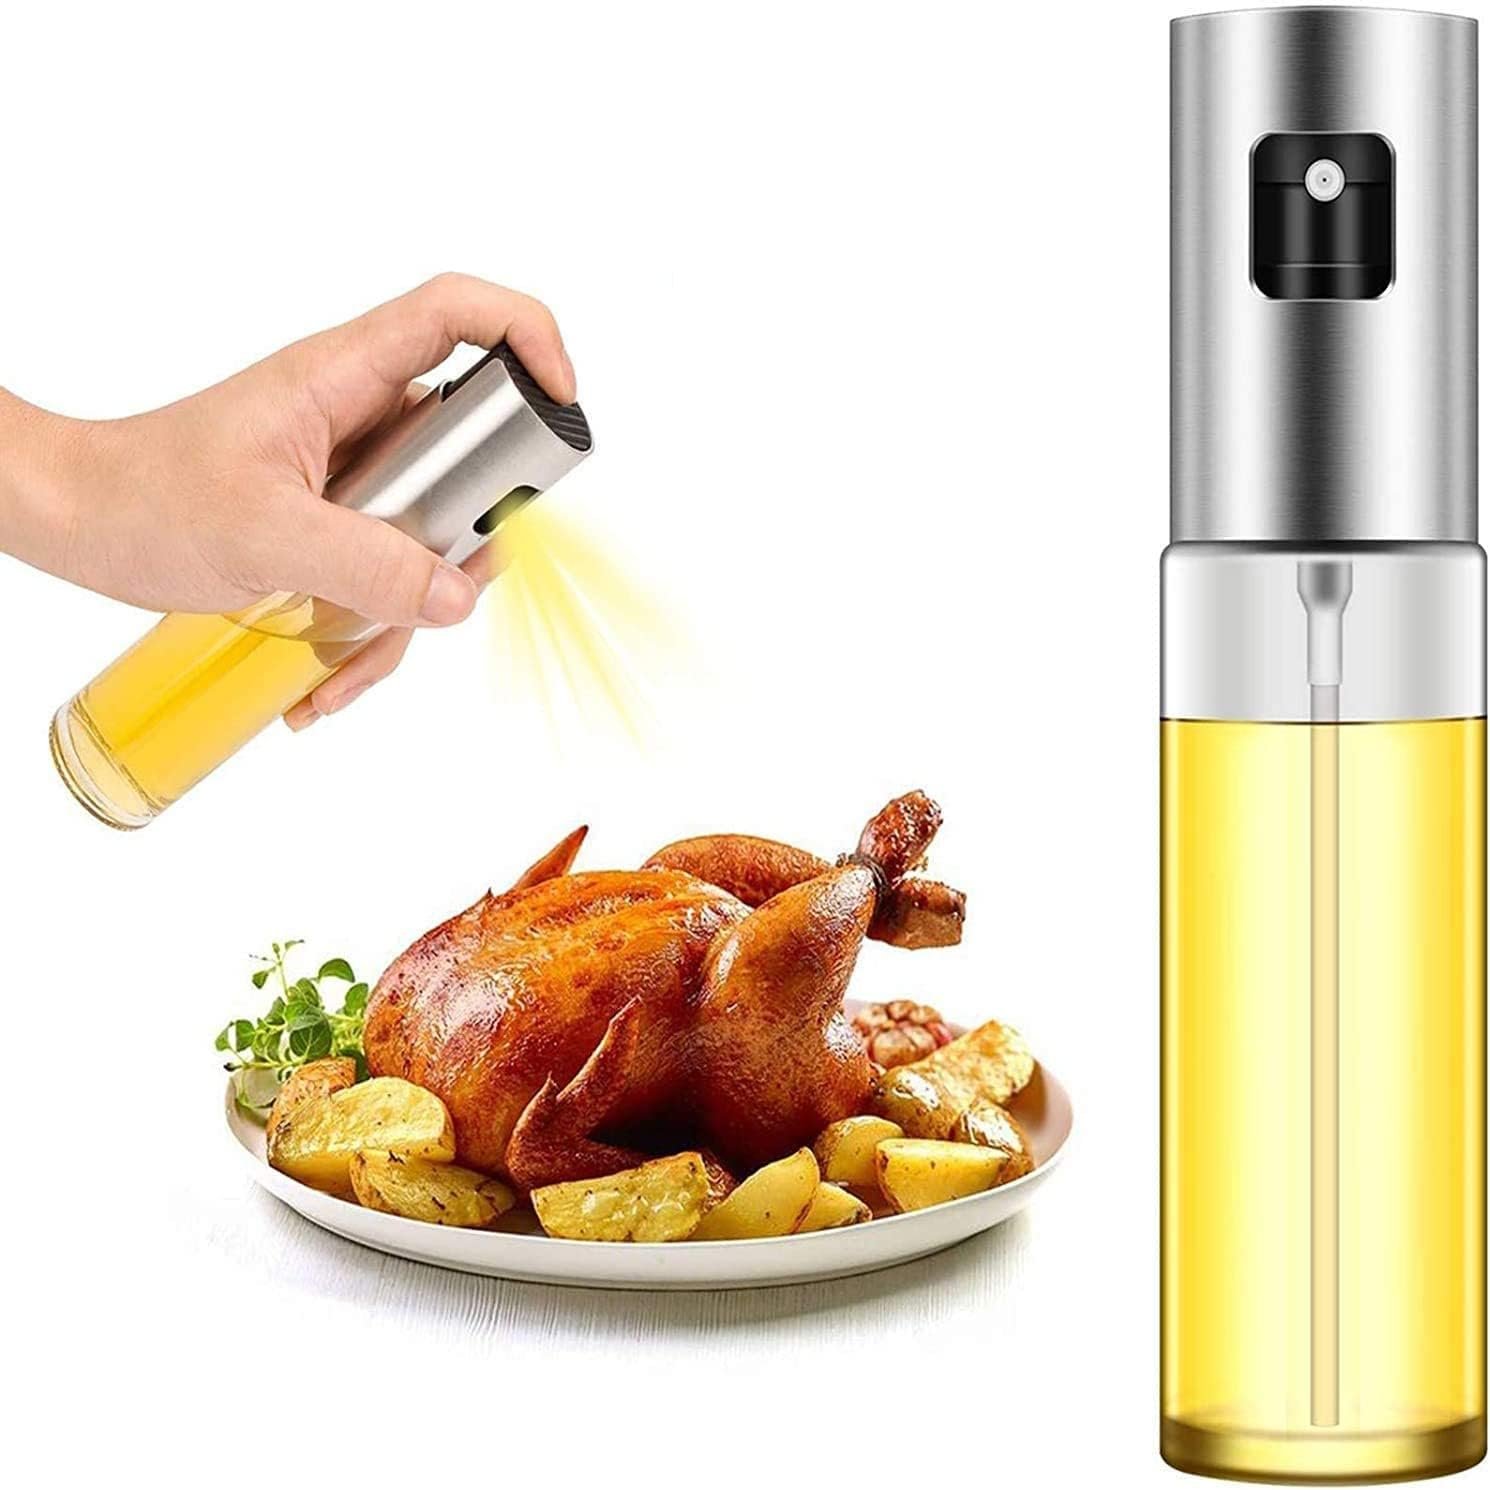 PUZMUG Oil Sprayer for Cooking, Olive Oil Sprayer Mister, 100ml Olive Oil Spray Bottle, Olive Oil Spray for Salad, BBQ, Kitchen Baking, Roasting